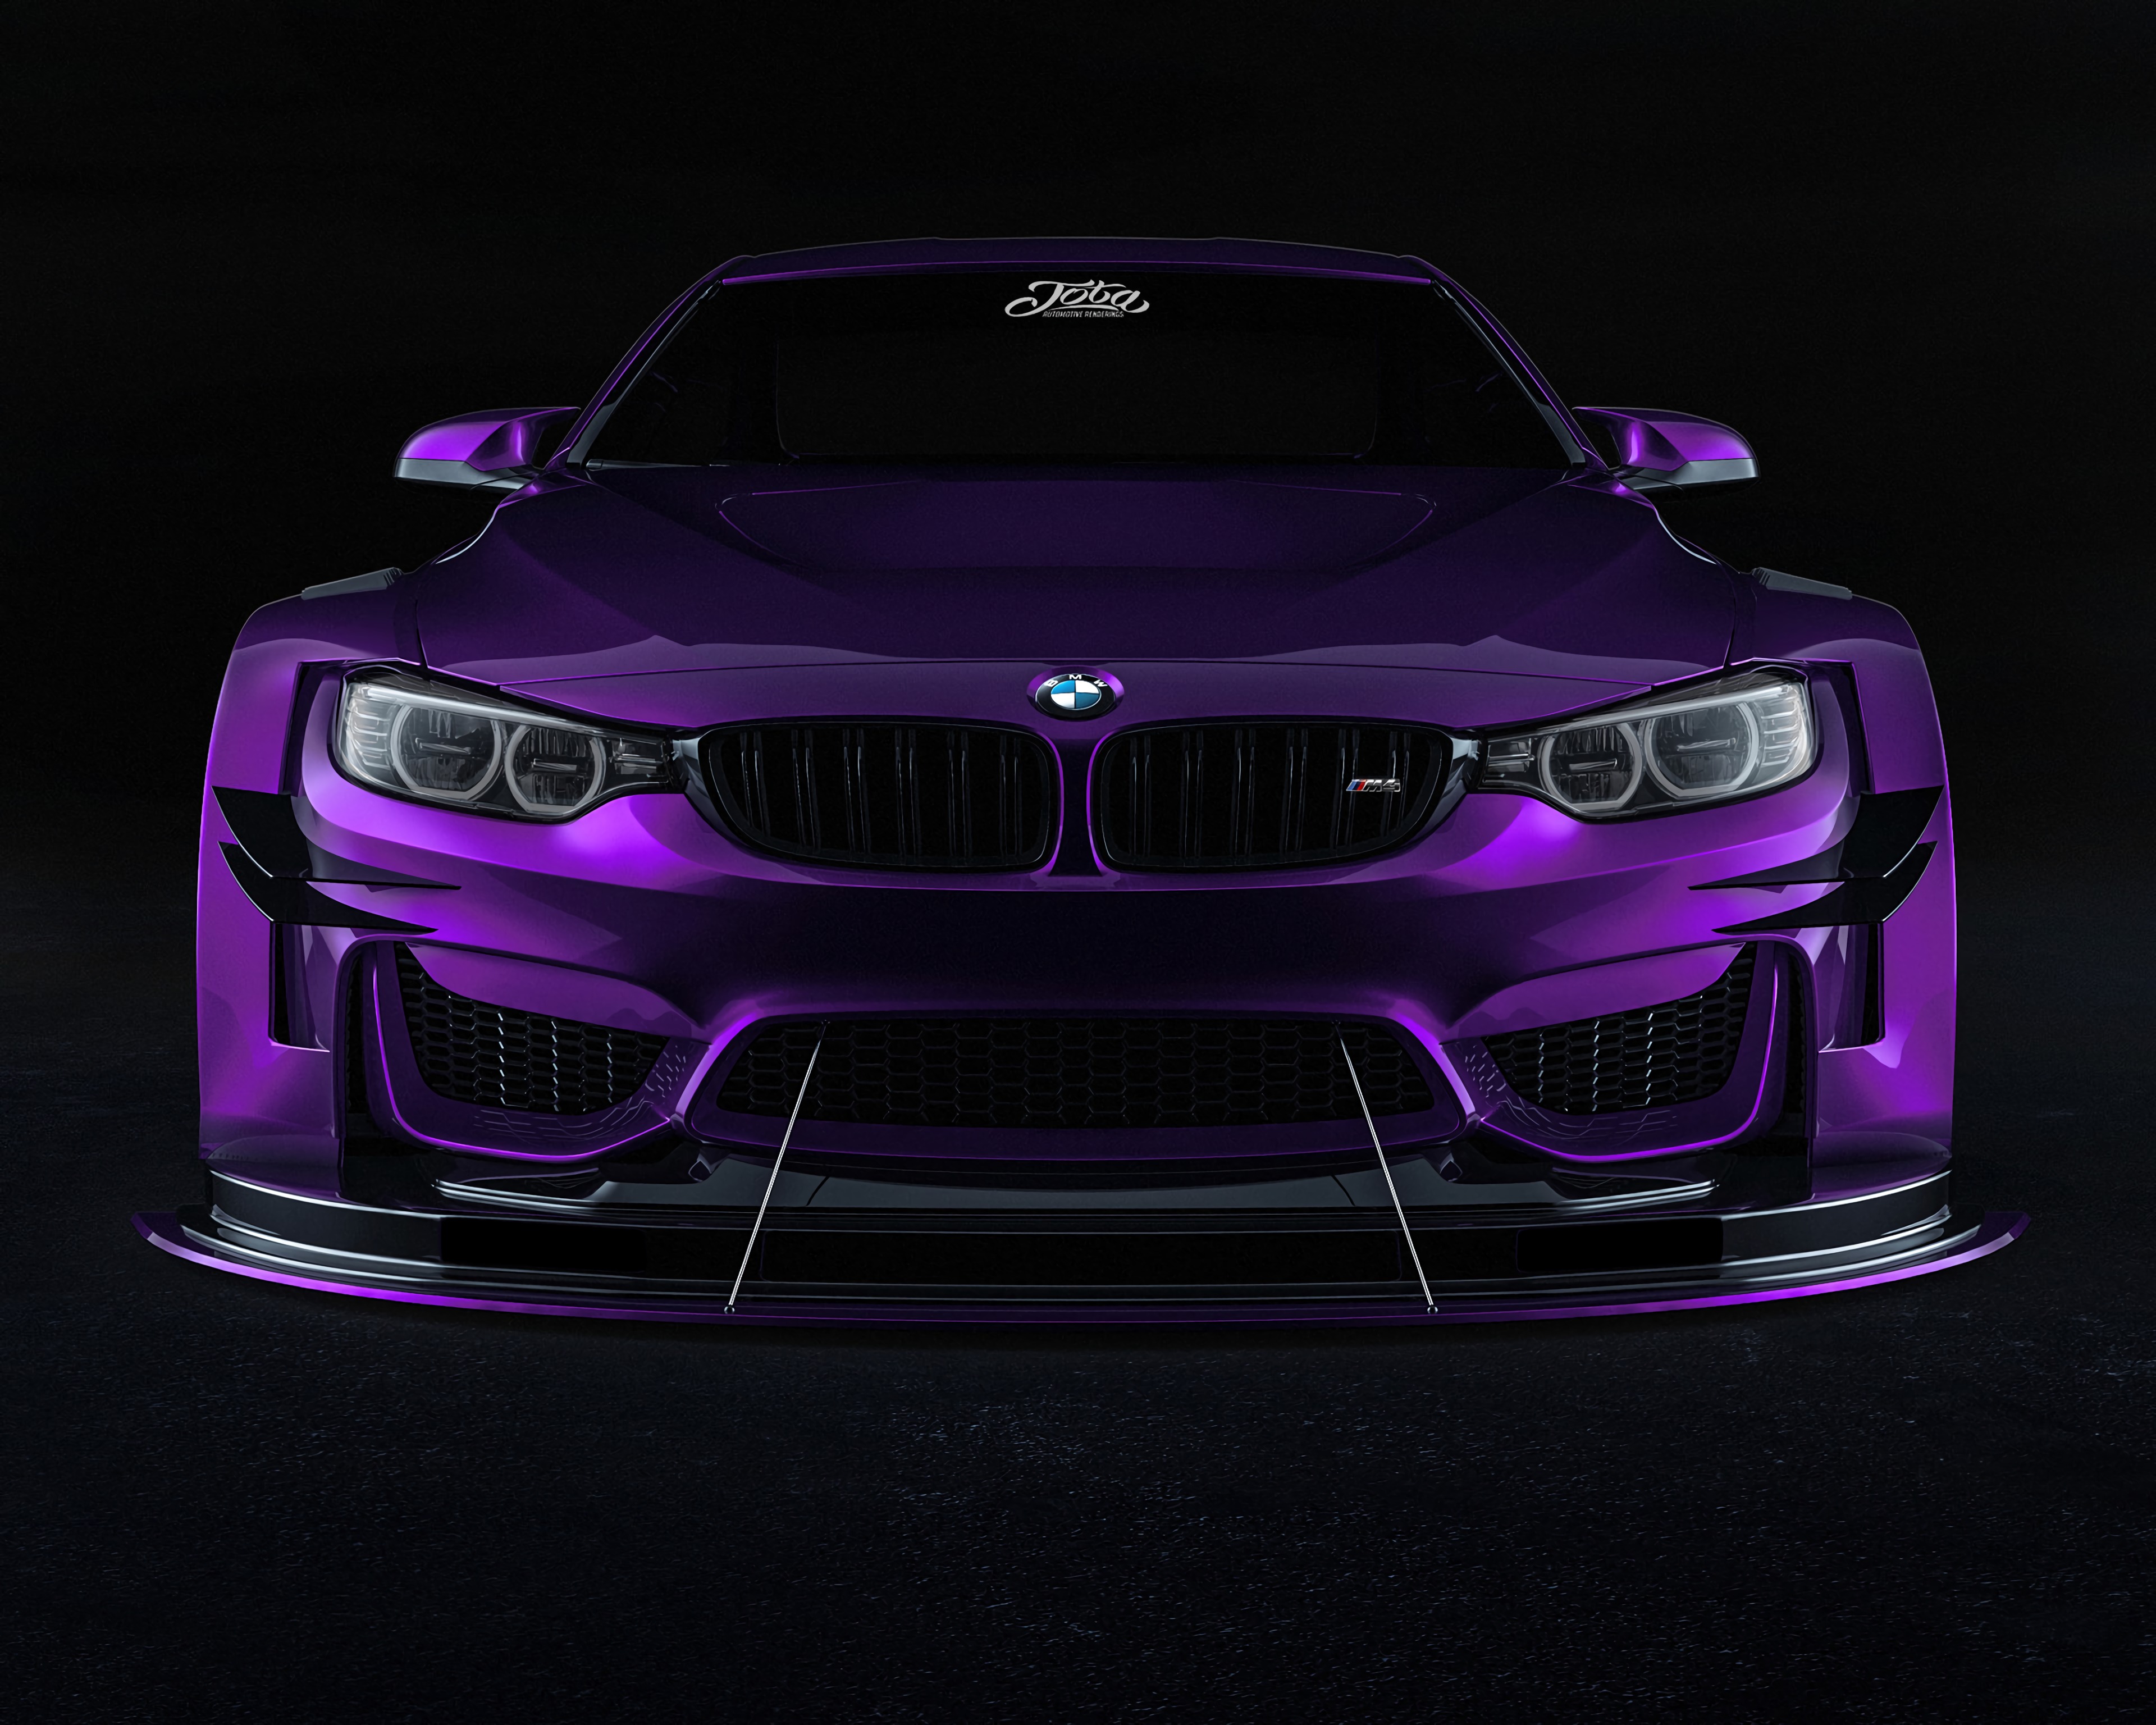 Laden Sie 154987: lila, cars, maschine, violett Desktop-Hintergrund kostenlos herunter